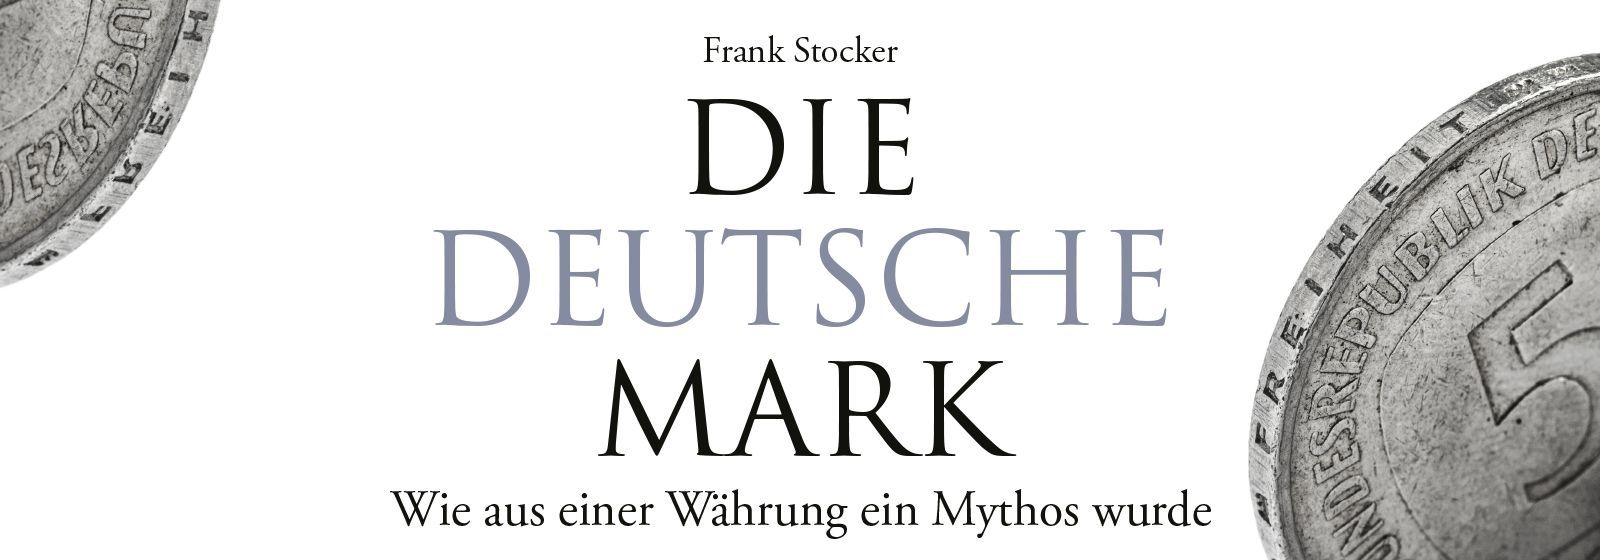 (c) Frankstocker.de